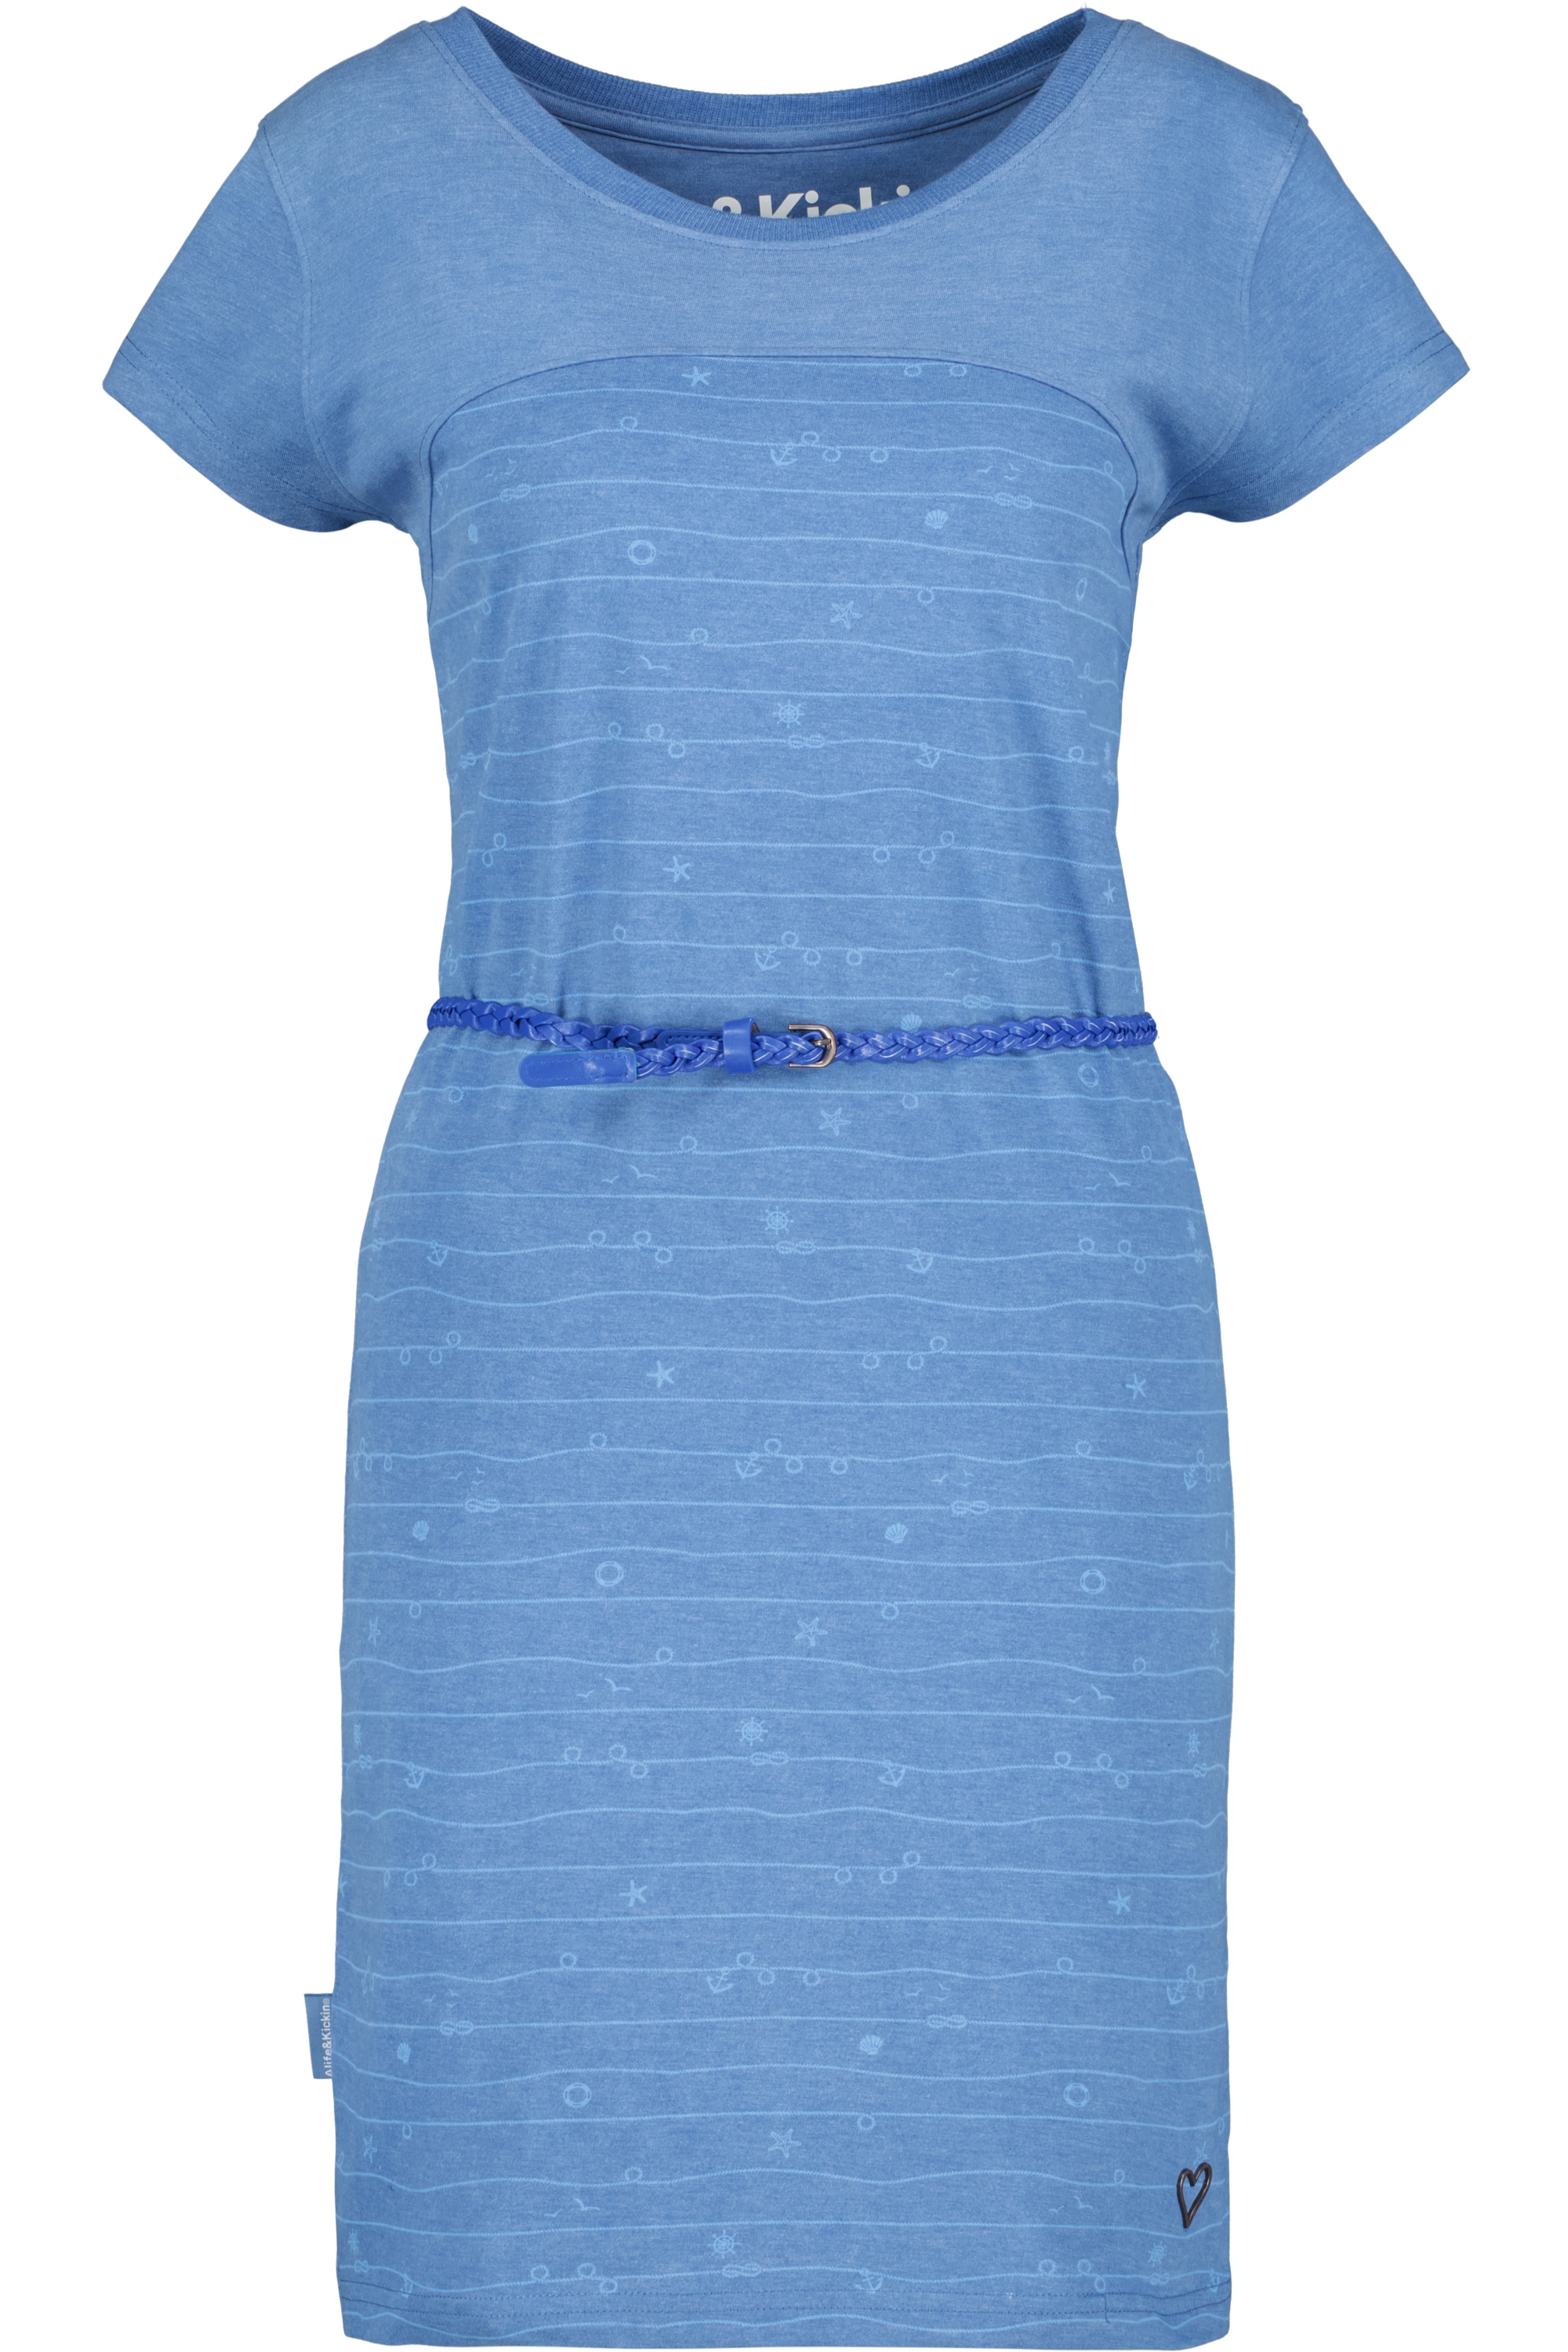 Alife & Kickin kaufen Dress »ClariceAK Kleid« Sommerkleid, Damen Blusenkleid